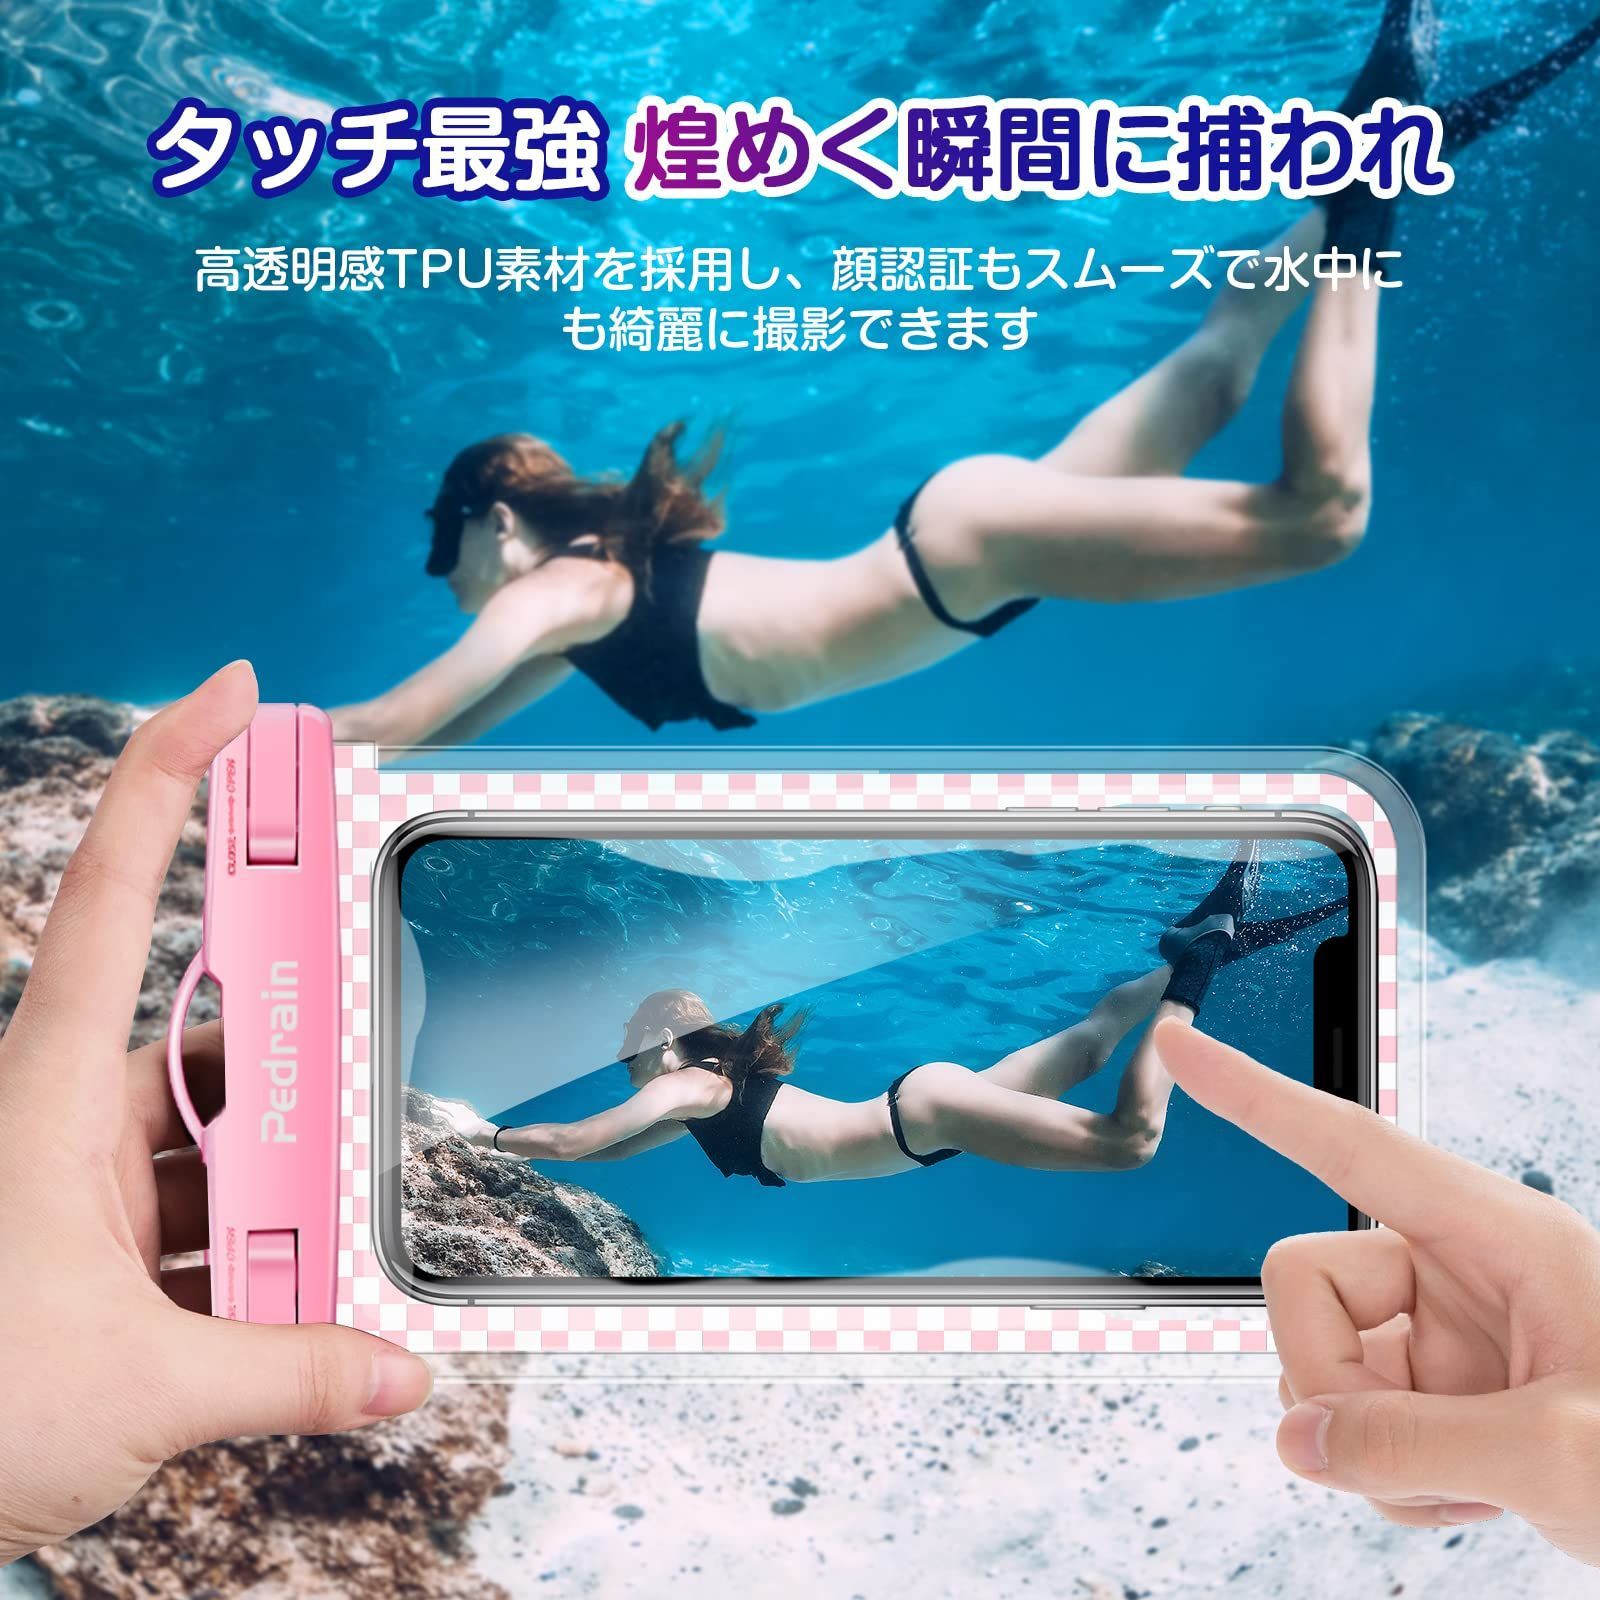 最新人気 防水ケース iPhone スマホ 海 プール 水中撮影 防水ポーチ ピンク